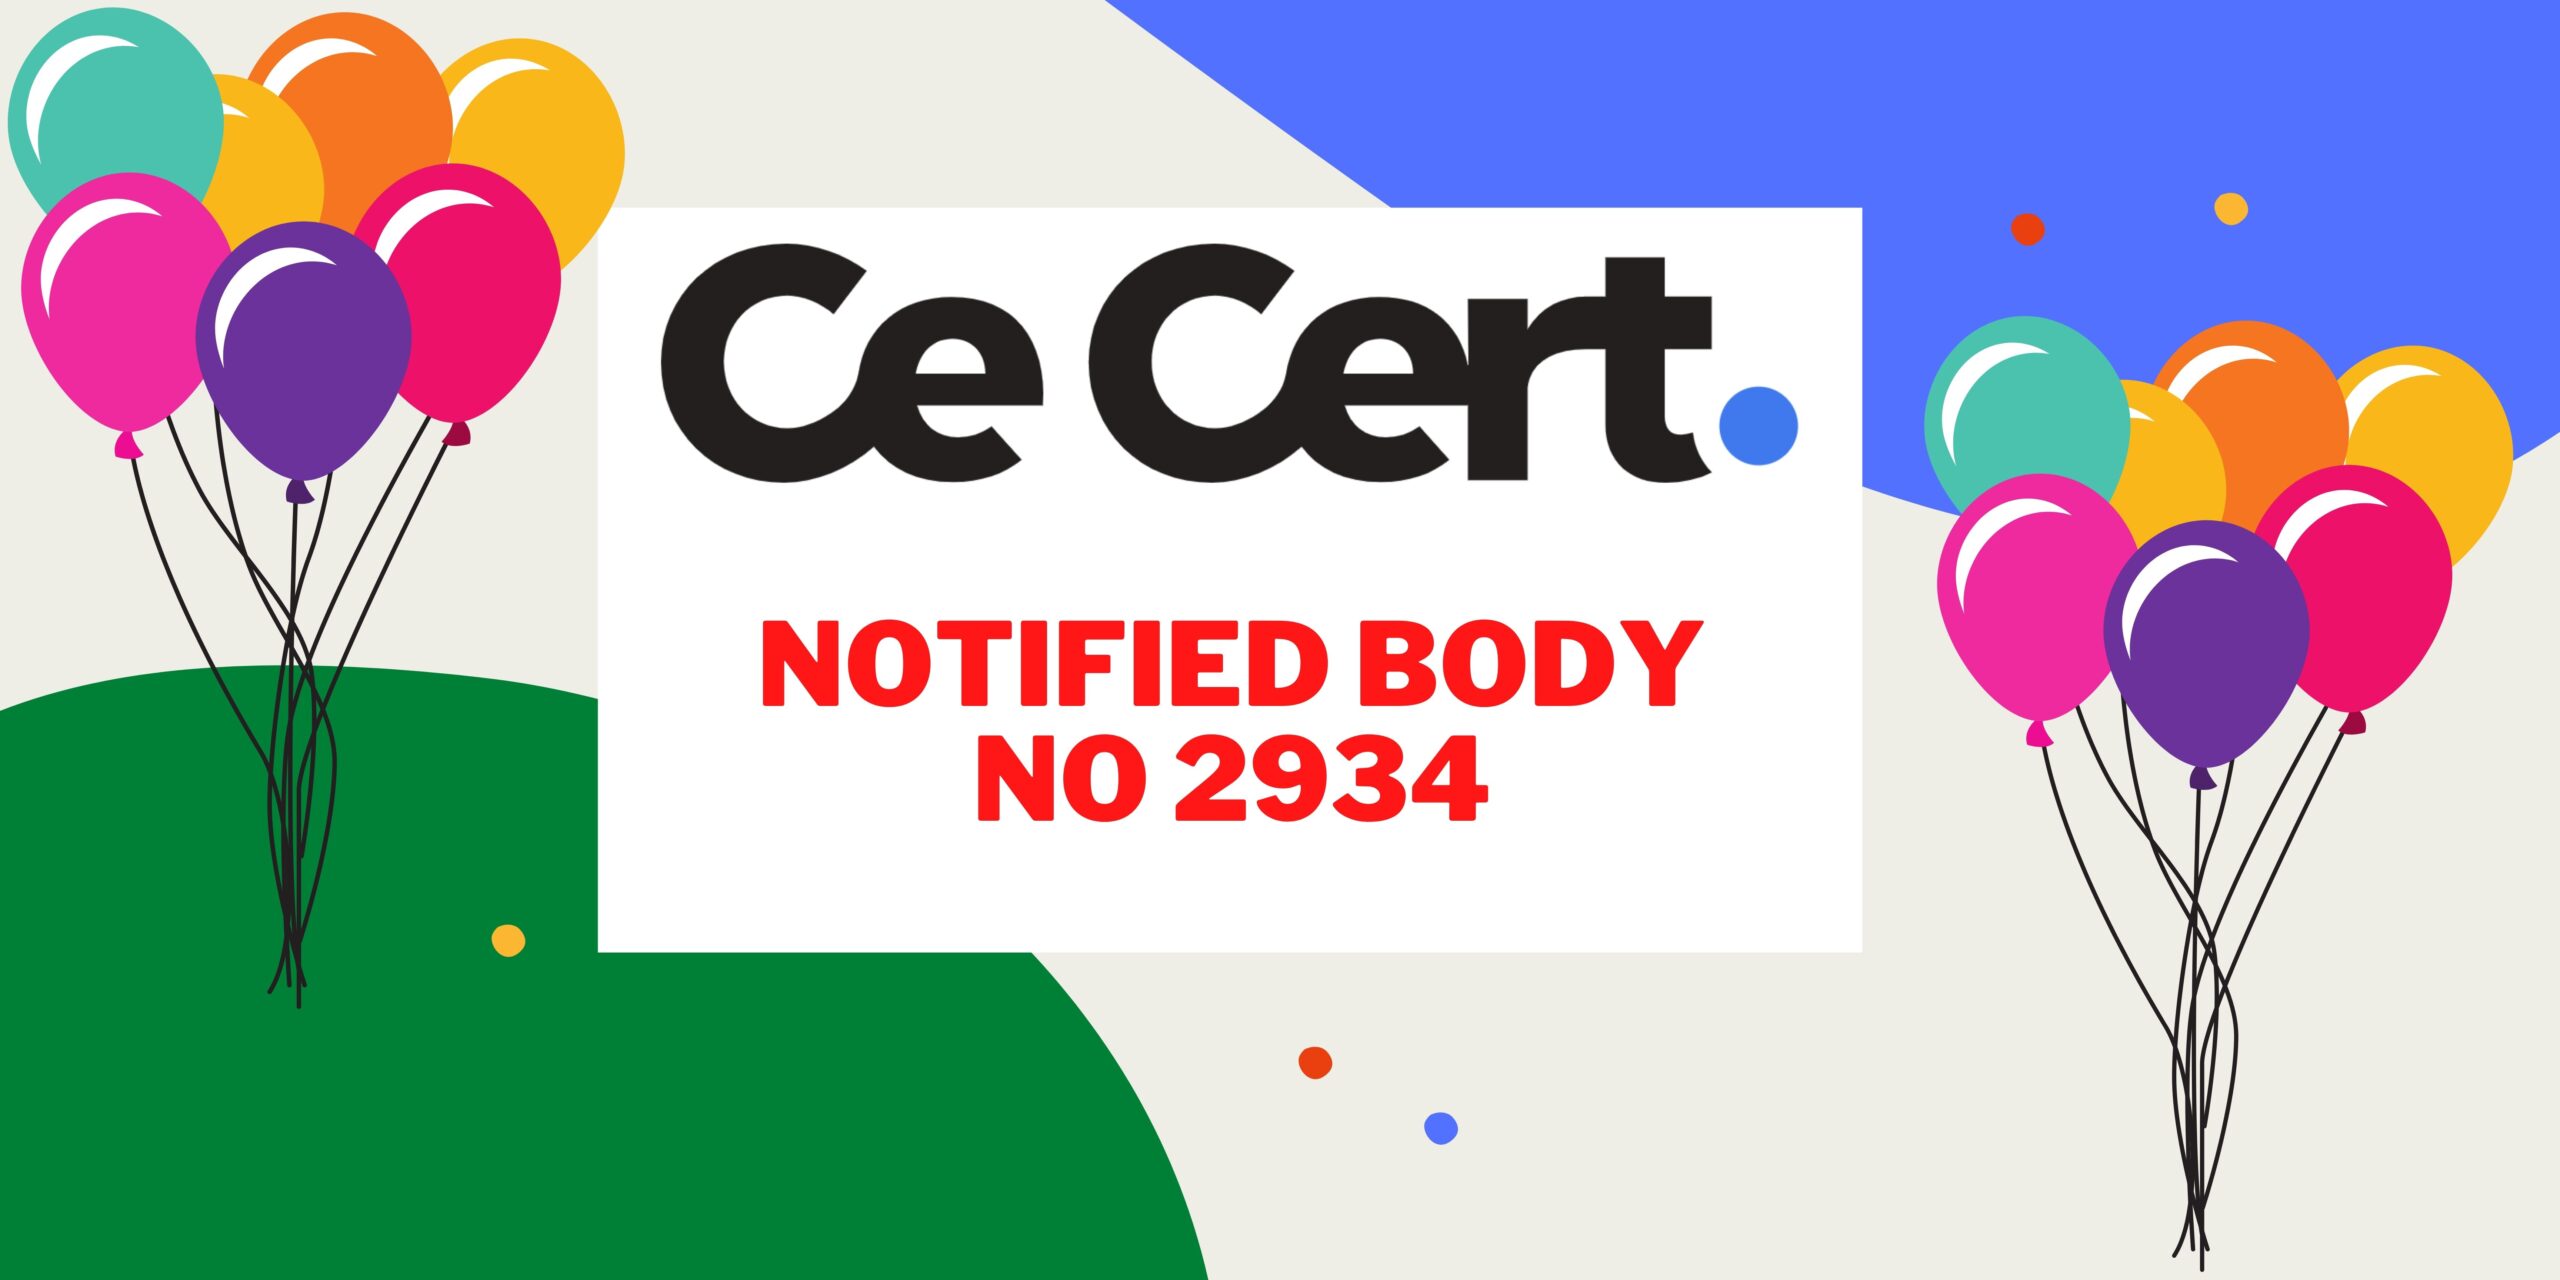 CeCert is a notified body 2934